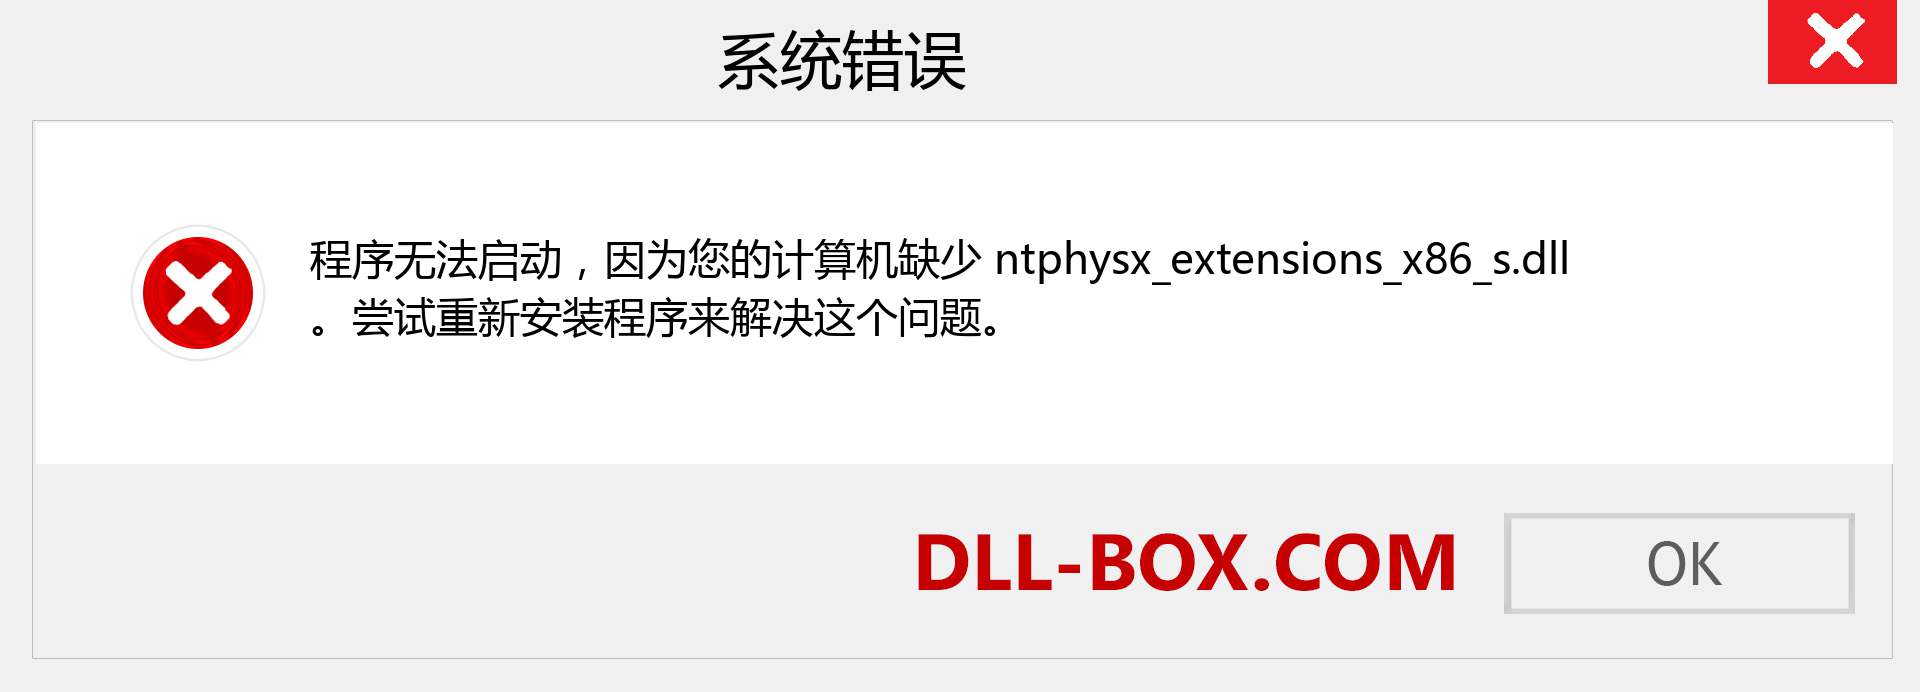 ntphysx_extensions_x86_s.dll 文件丢失？。 适用于 Windows 7、8、10 的下载 - 修复 Windows、照片、图像上的 ntphysx_extensions_x86_s dll 丢失错误